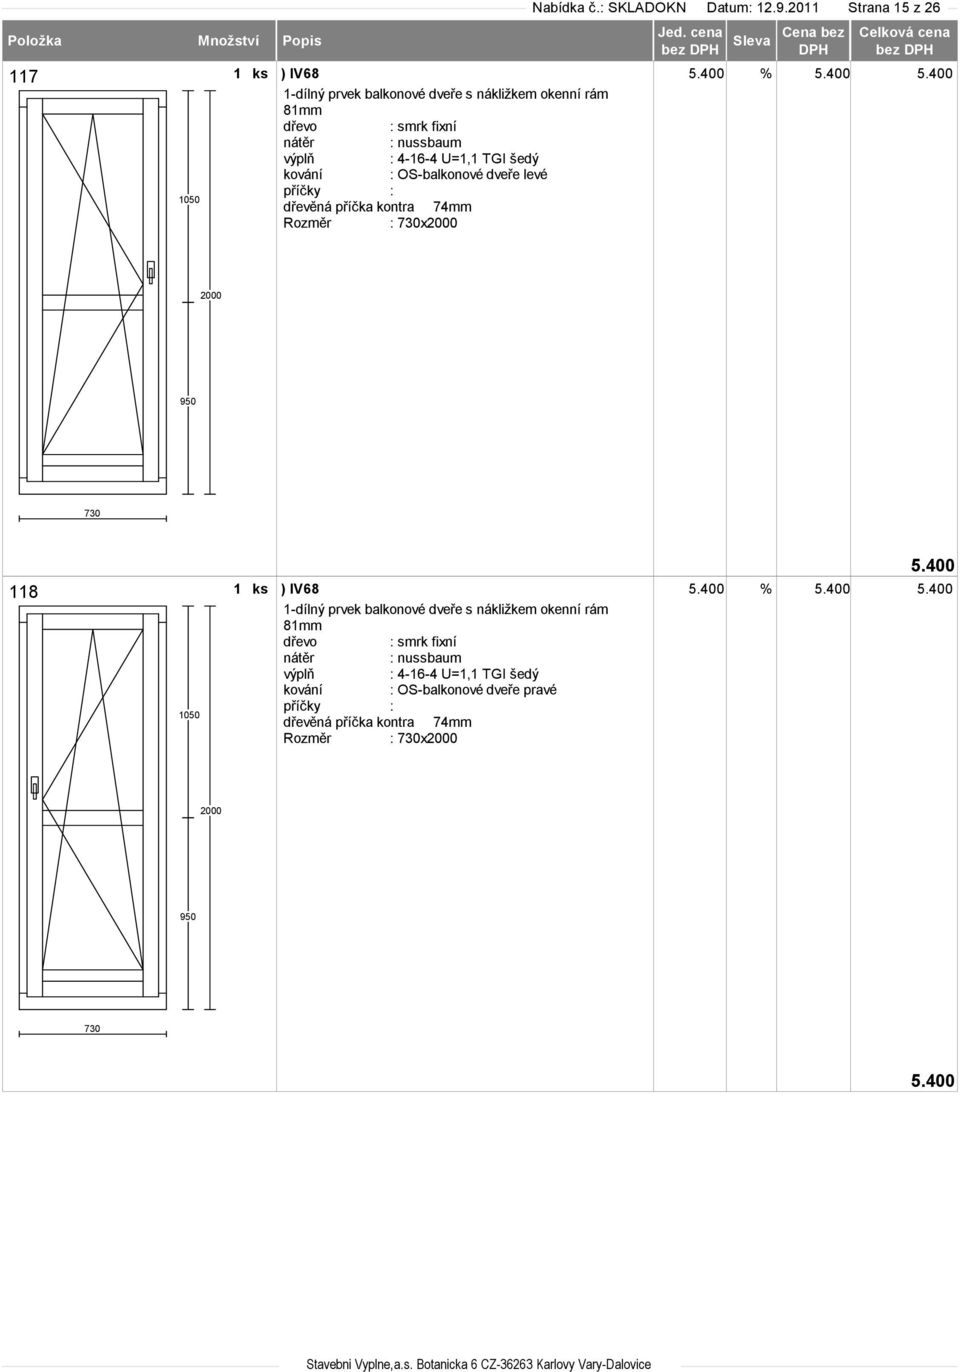 OS-balkonové dveře levé dřevěná příčka kontra 74mm Rozměr : 730x2000 5.400 2000 950 730 118 1050 5.400 % 5.